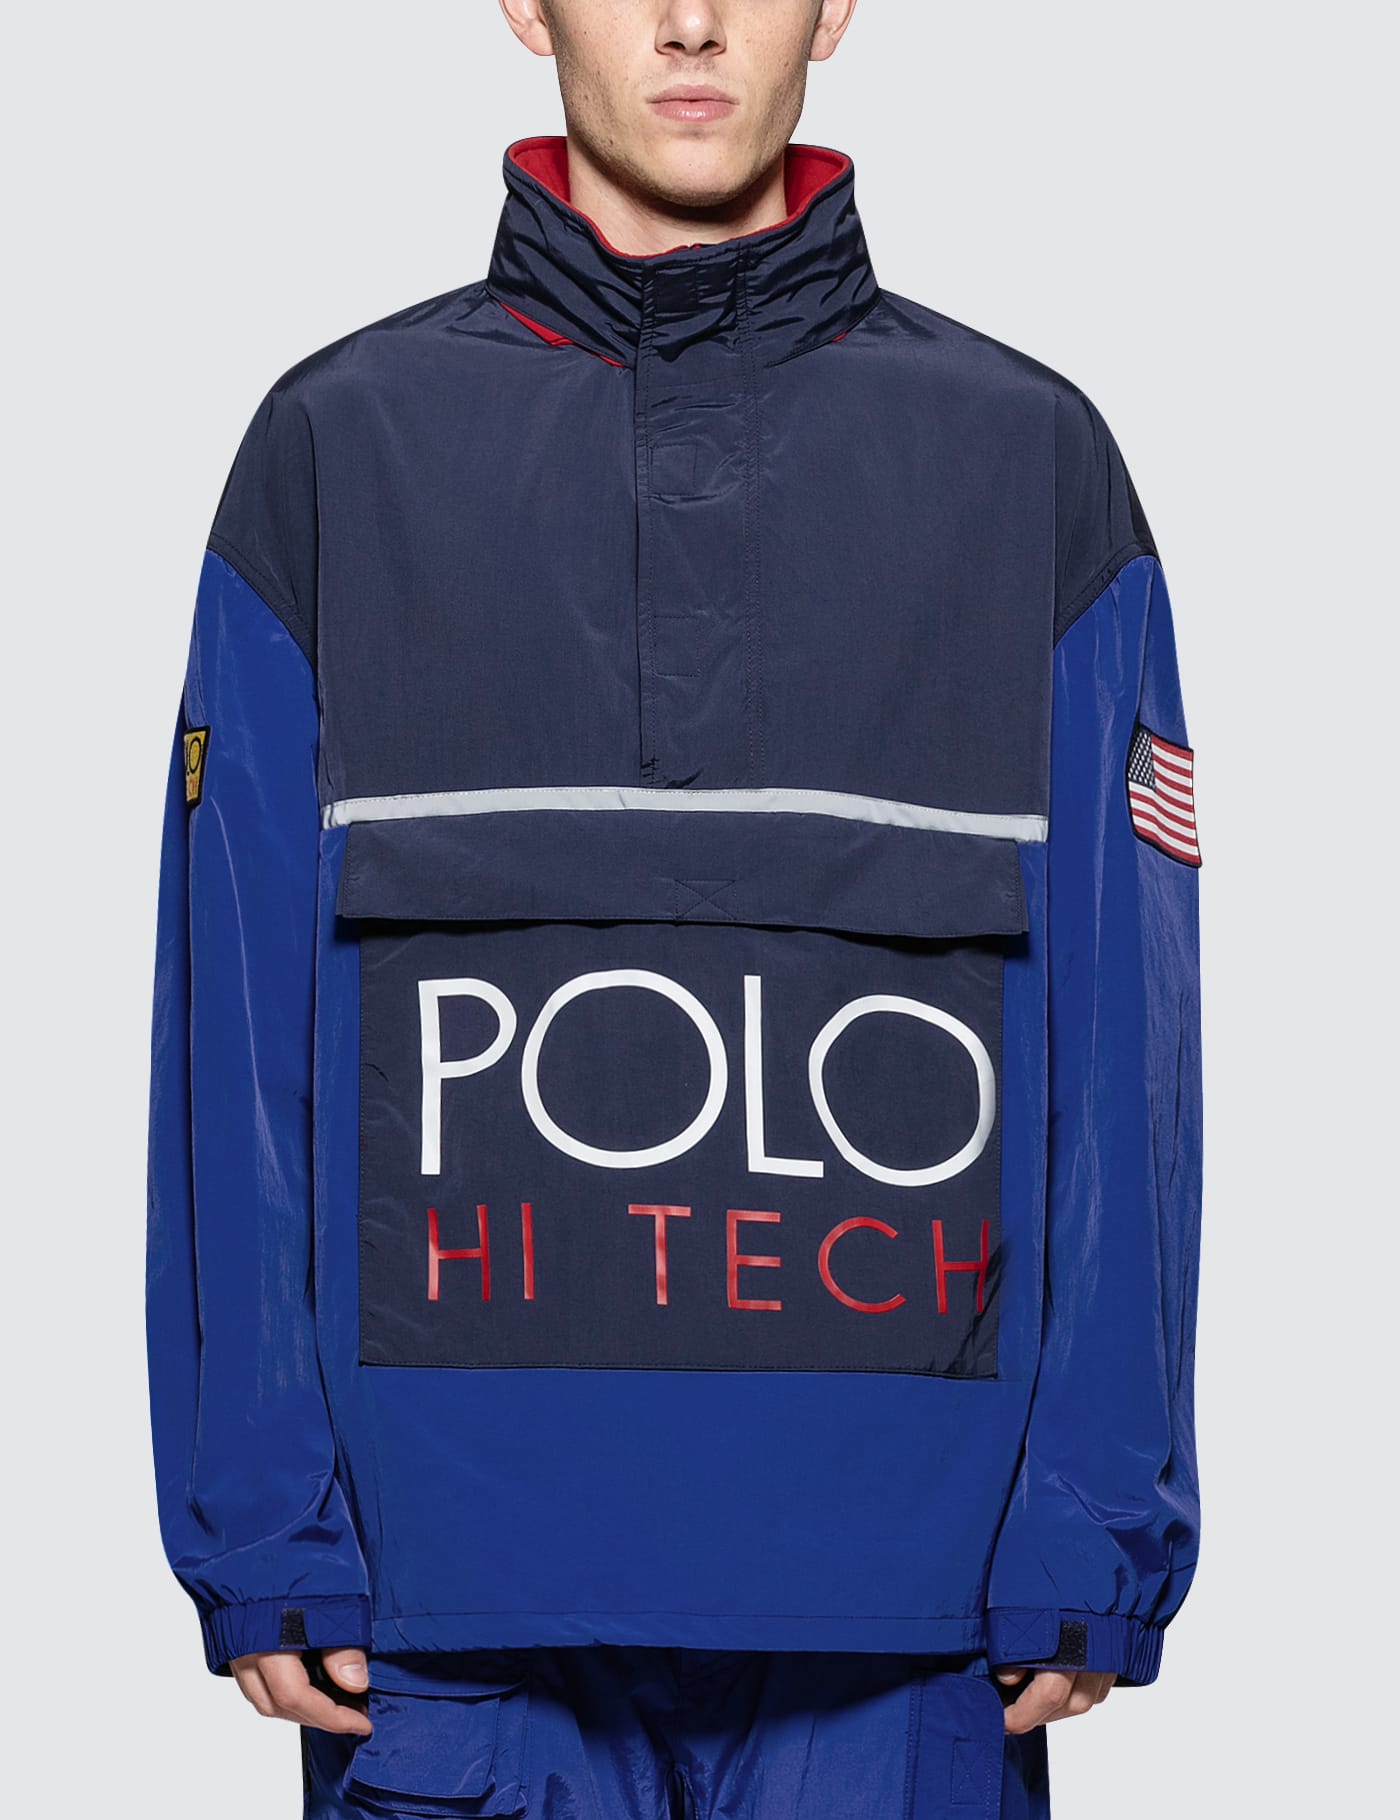 polo hi tech windbreaker jacket